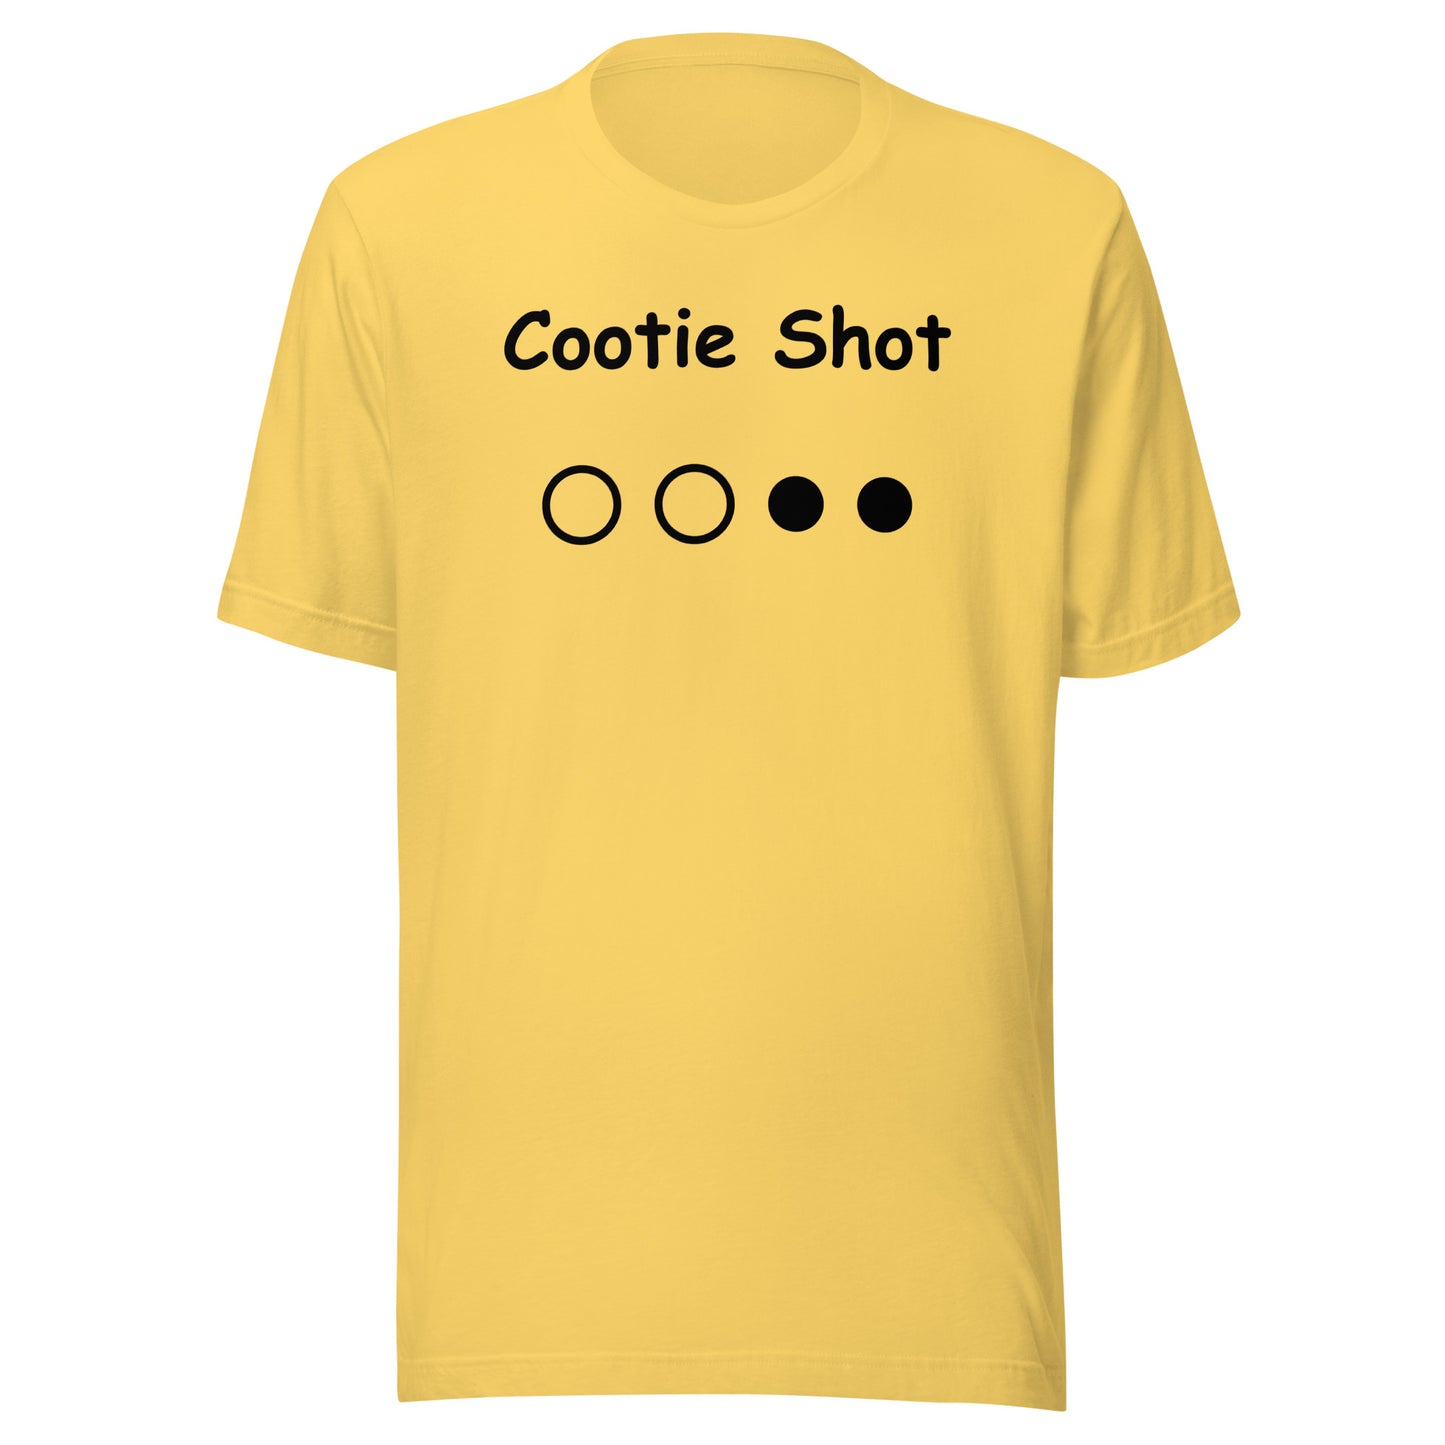 COOTIE SHOT Unisex T-Shirt